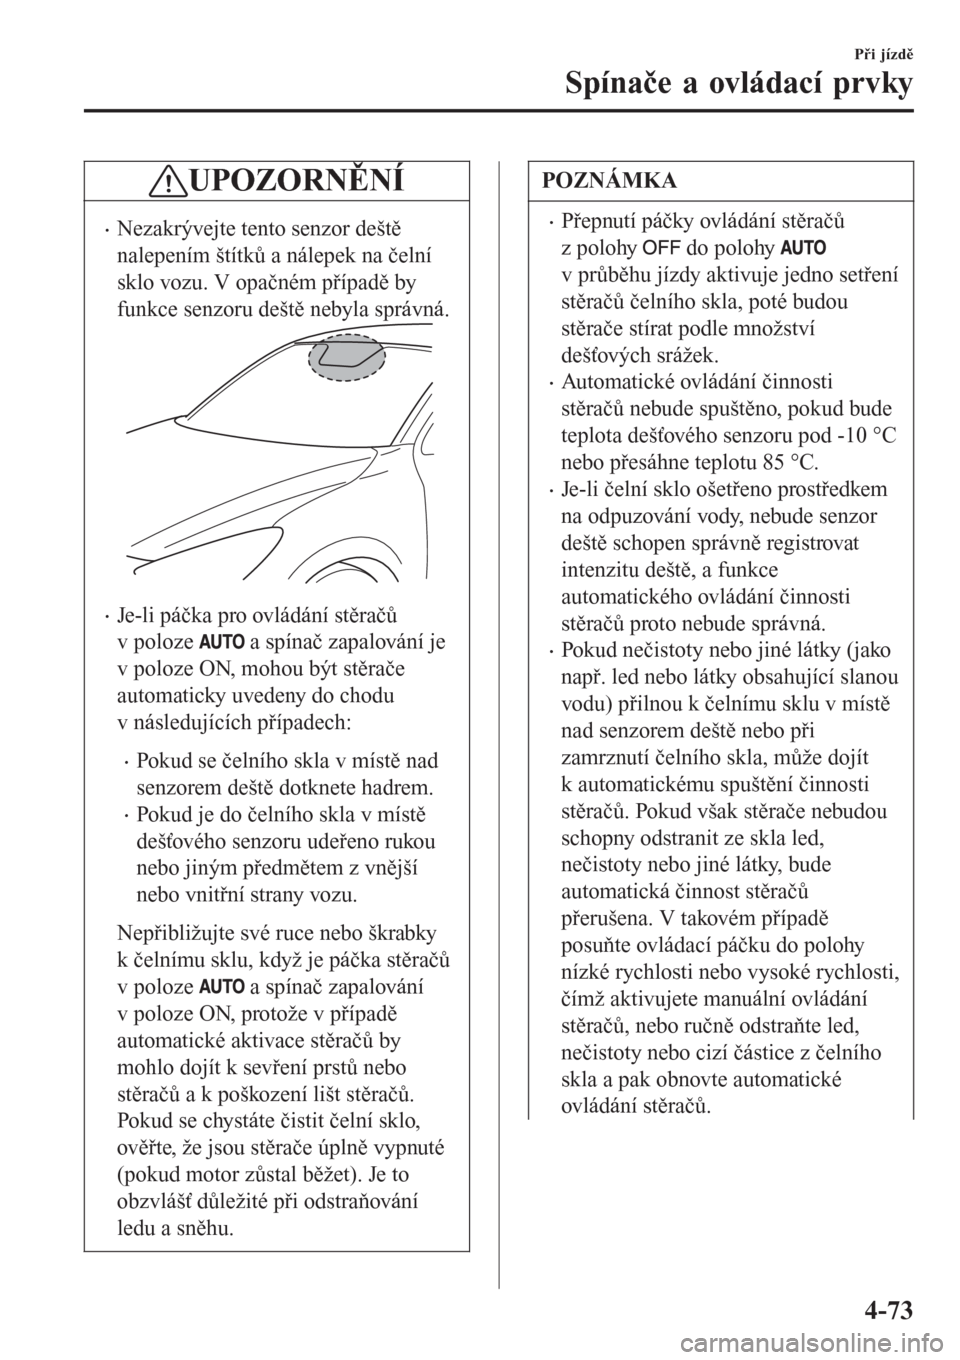 MAZDA MODEL CX-3 2015  Návod k obsluze (in Czech) UPOZORNĚNÍ
•Nezakrývejte tento senzor deště
nalepením štítků a nálepek na čelní
sklo vozu. V opačném případě by
funkce senzoru deště nebyla správná.
•Je-li páčka pro ovlád�